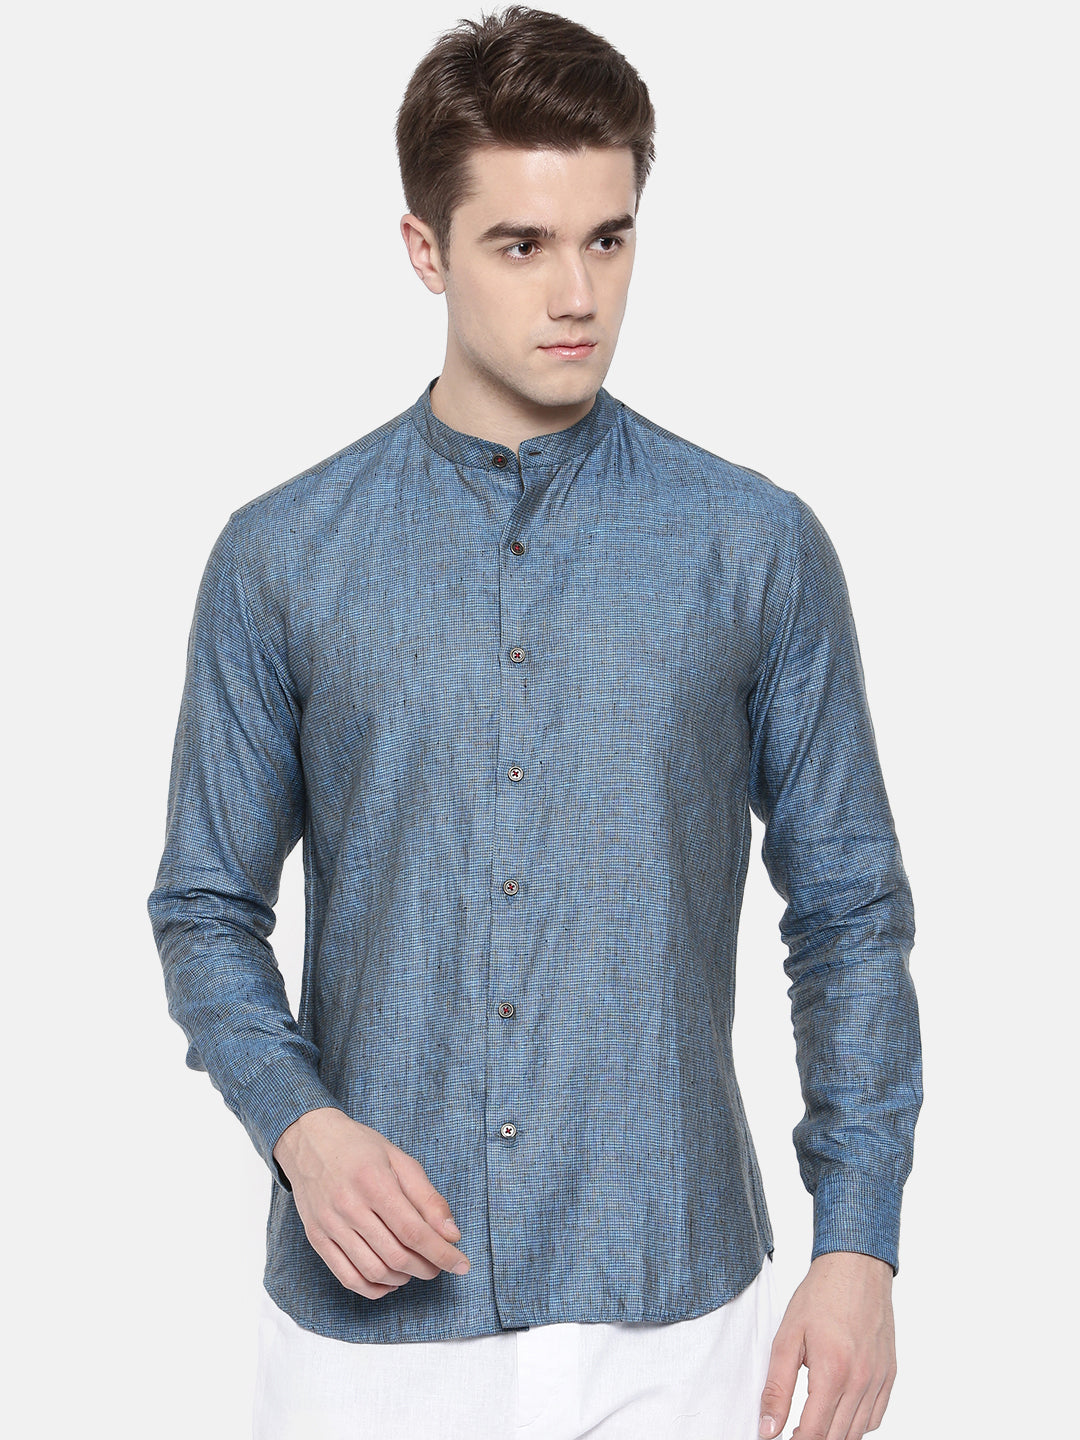 Blue Chex Linen Shirt - MM0708